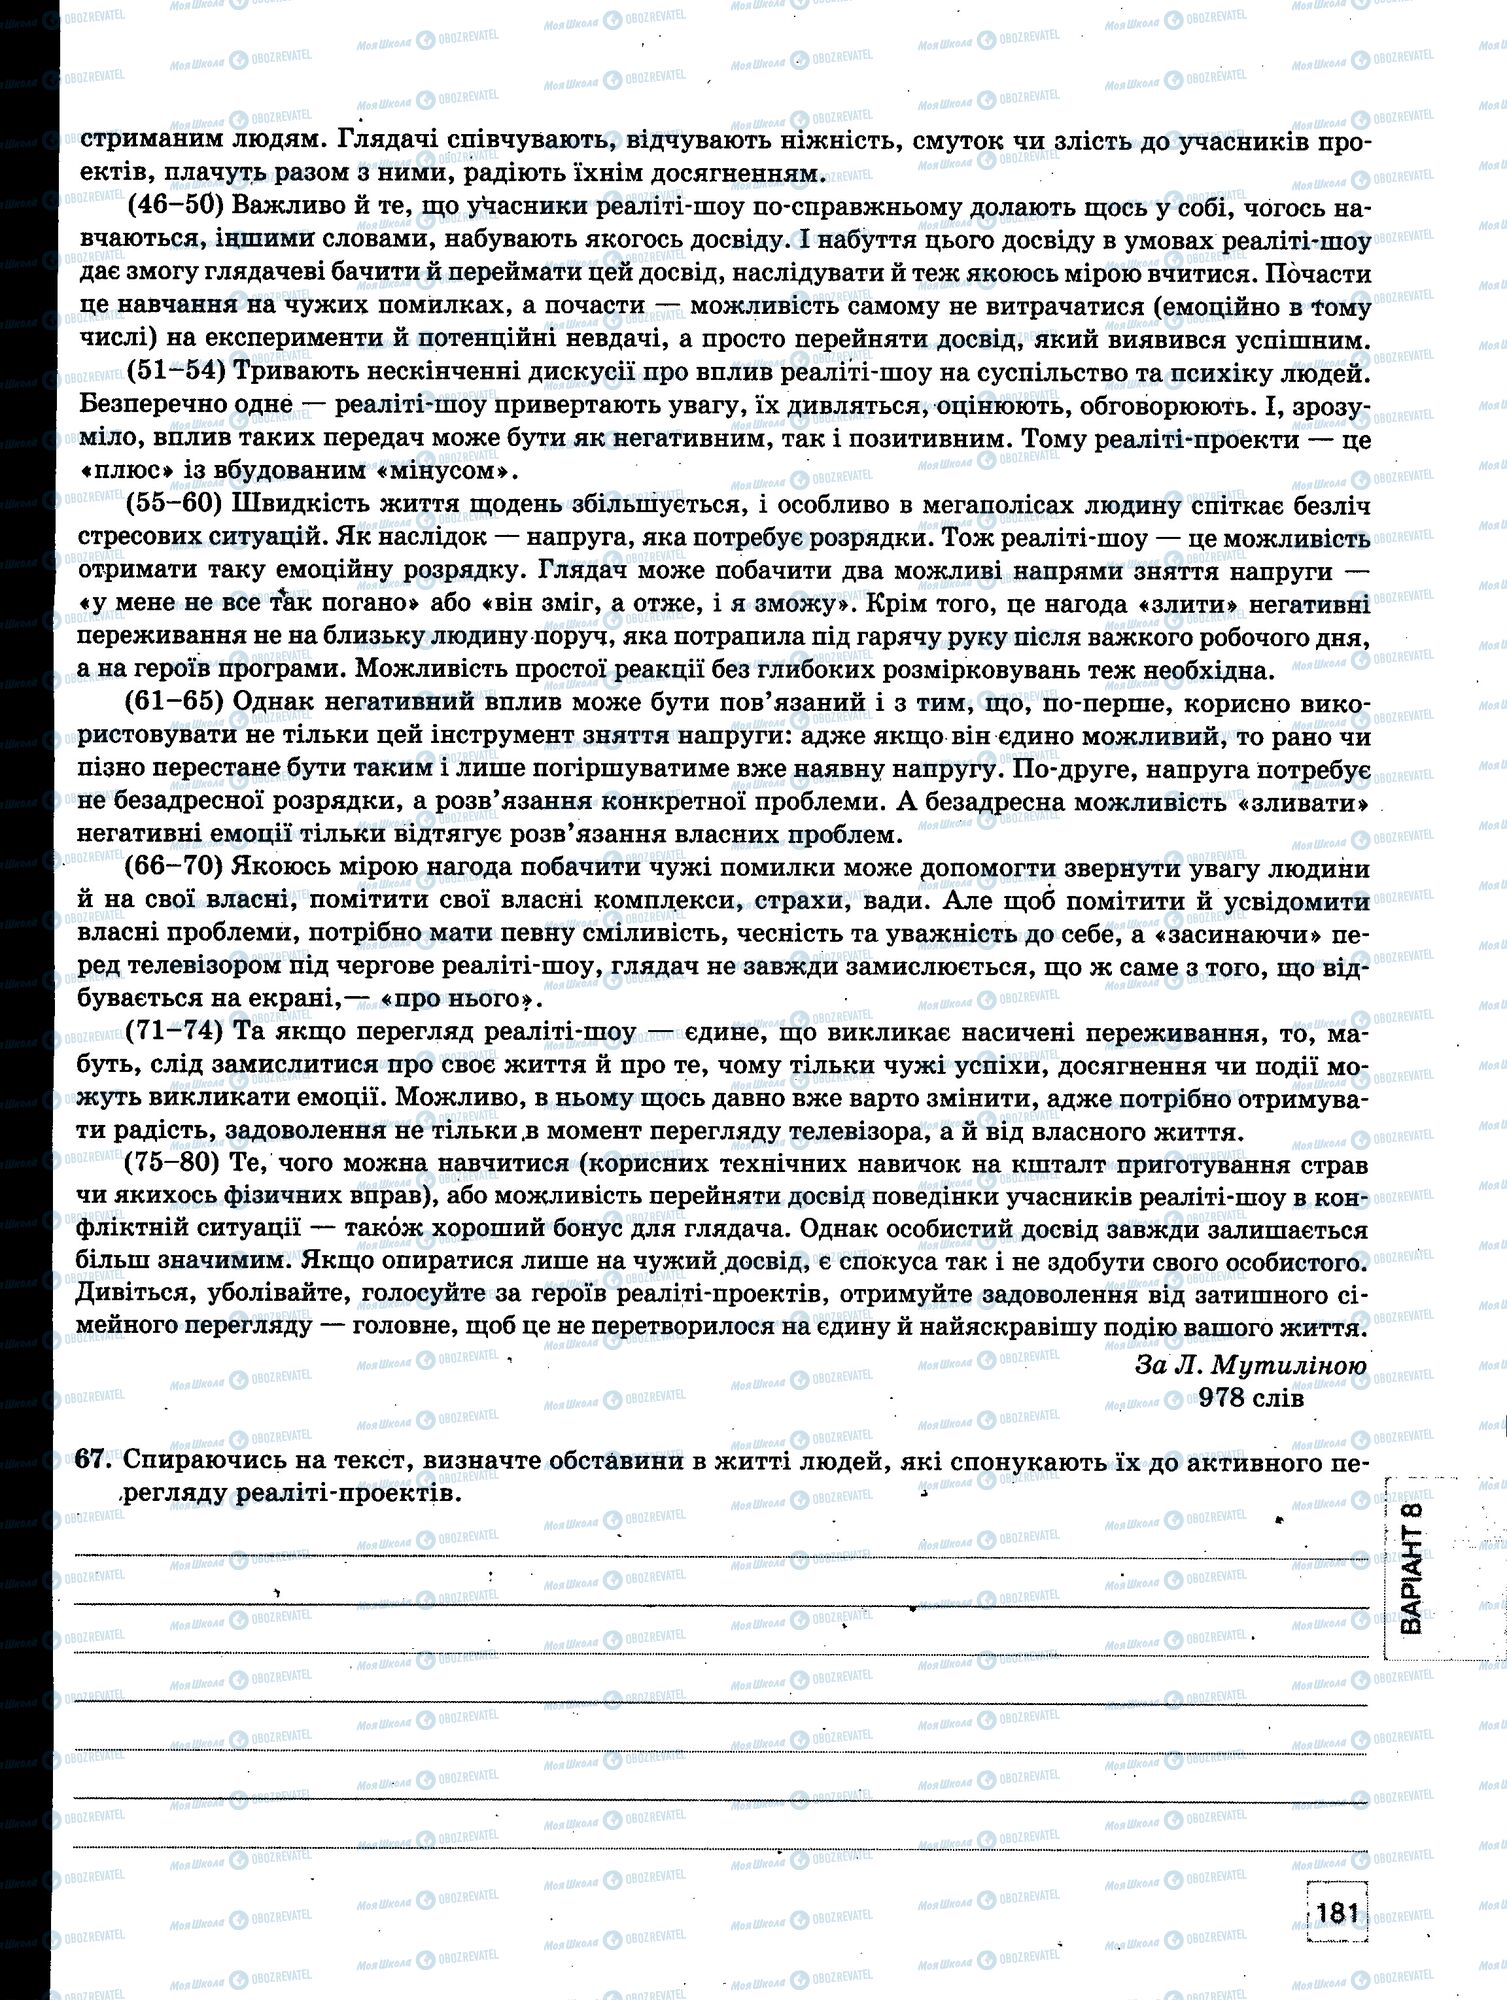 ЗНО Укр мова 11 класс страница 181